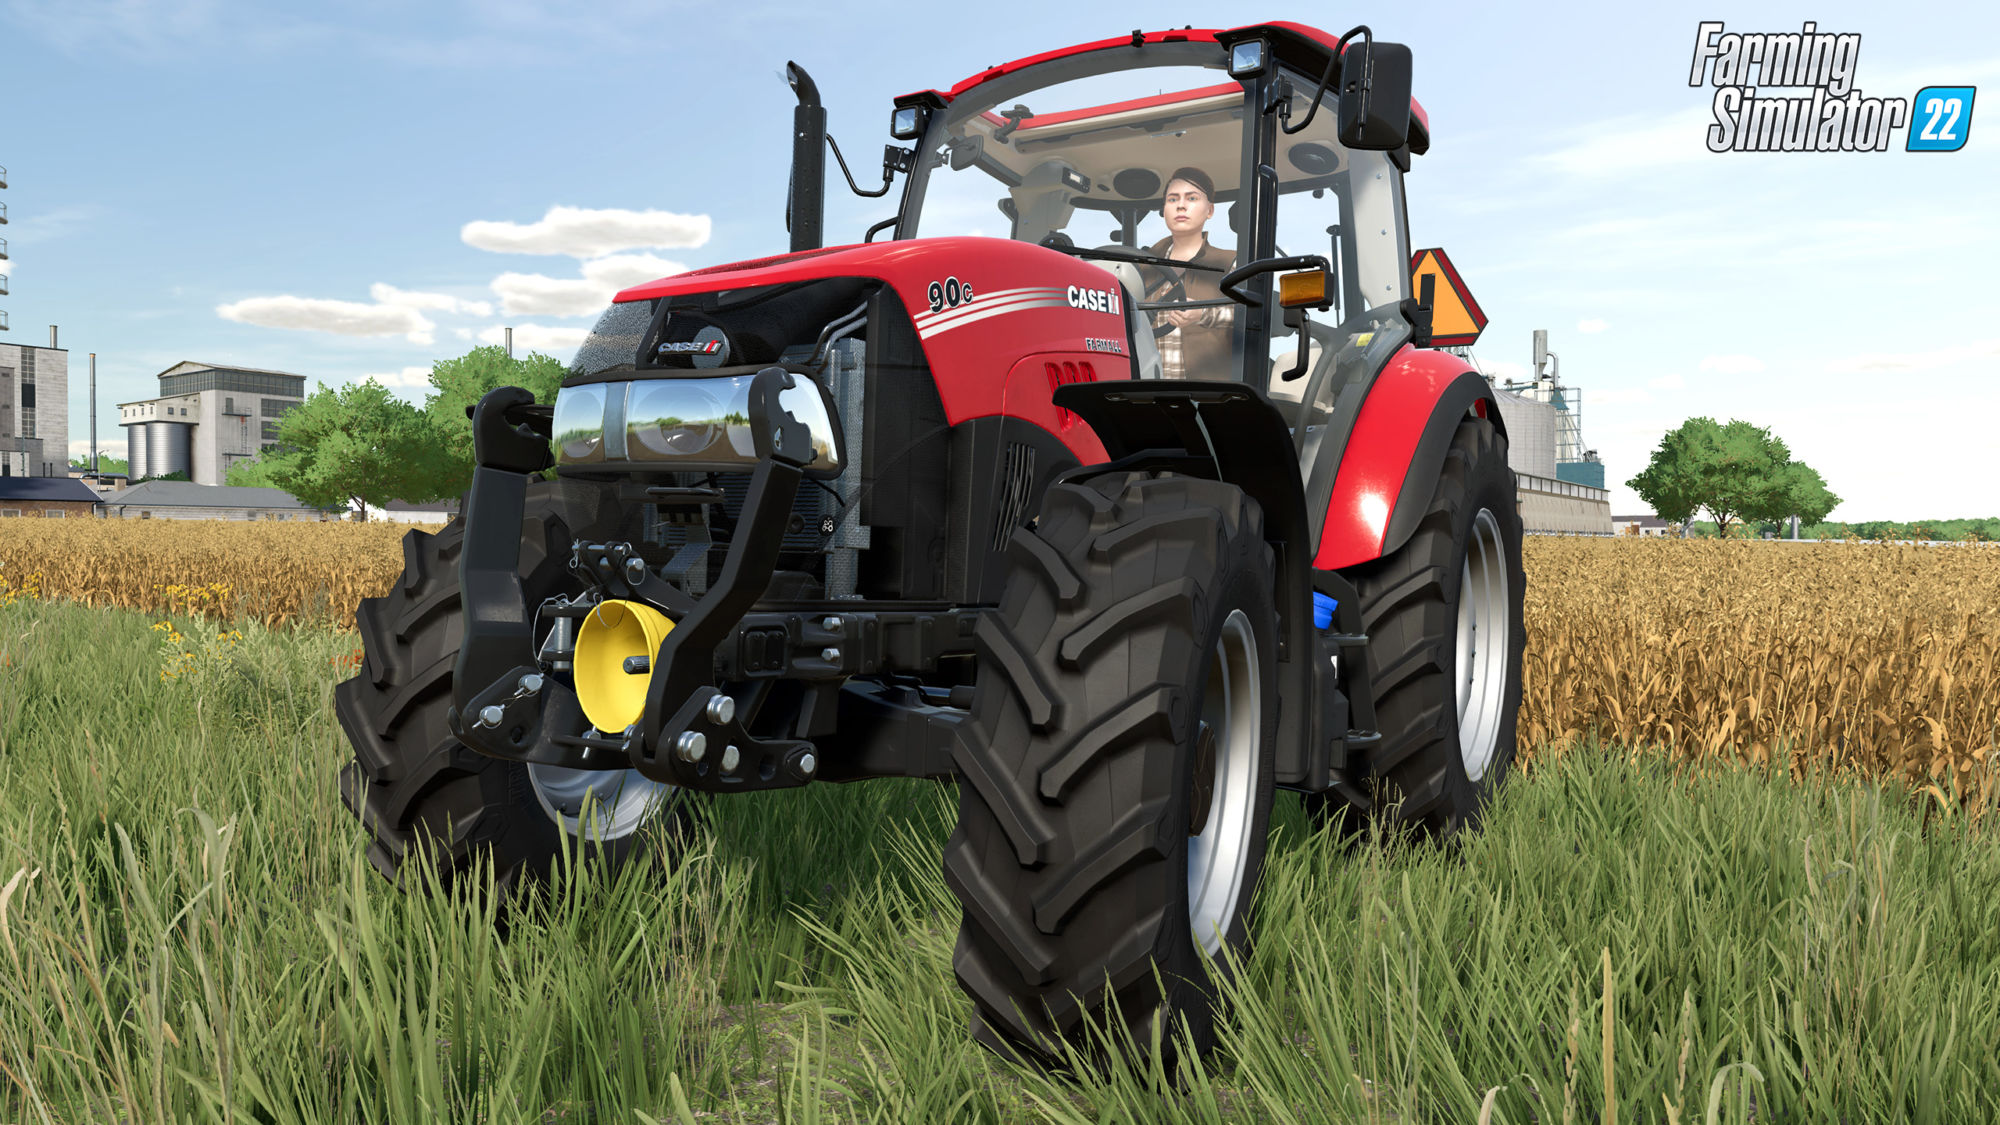 Farming Simulator 22: Premium - Garage Trailer